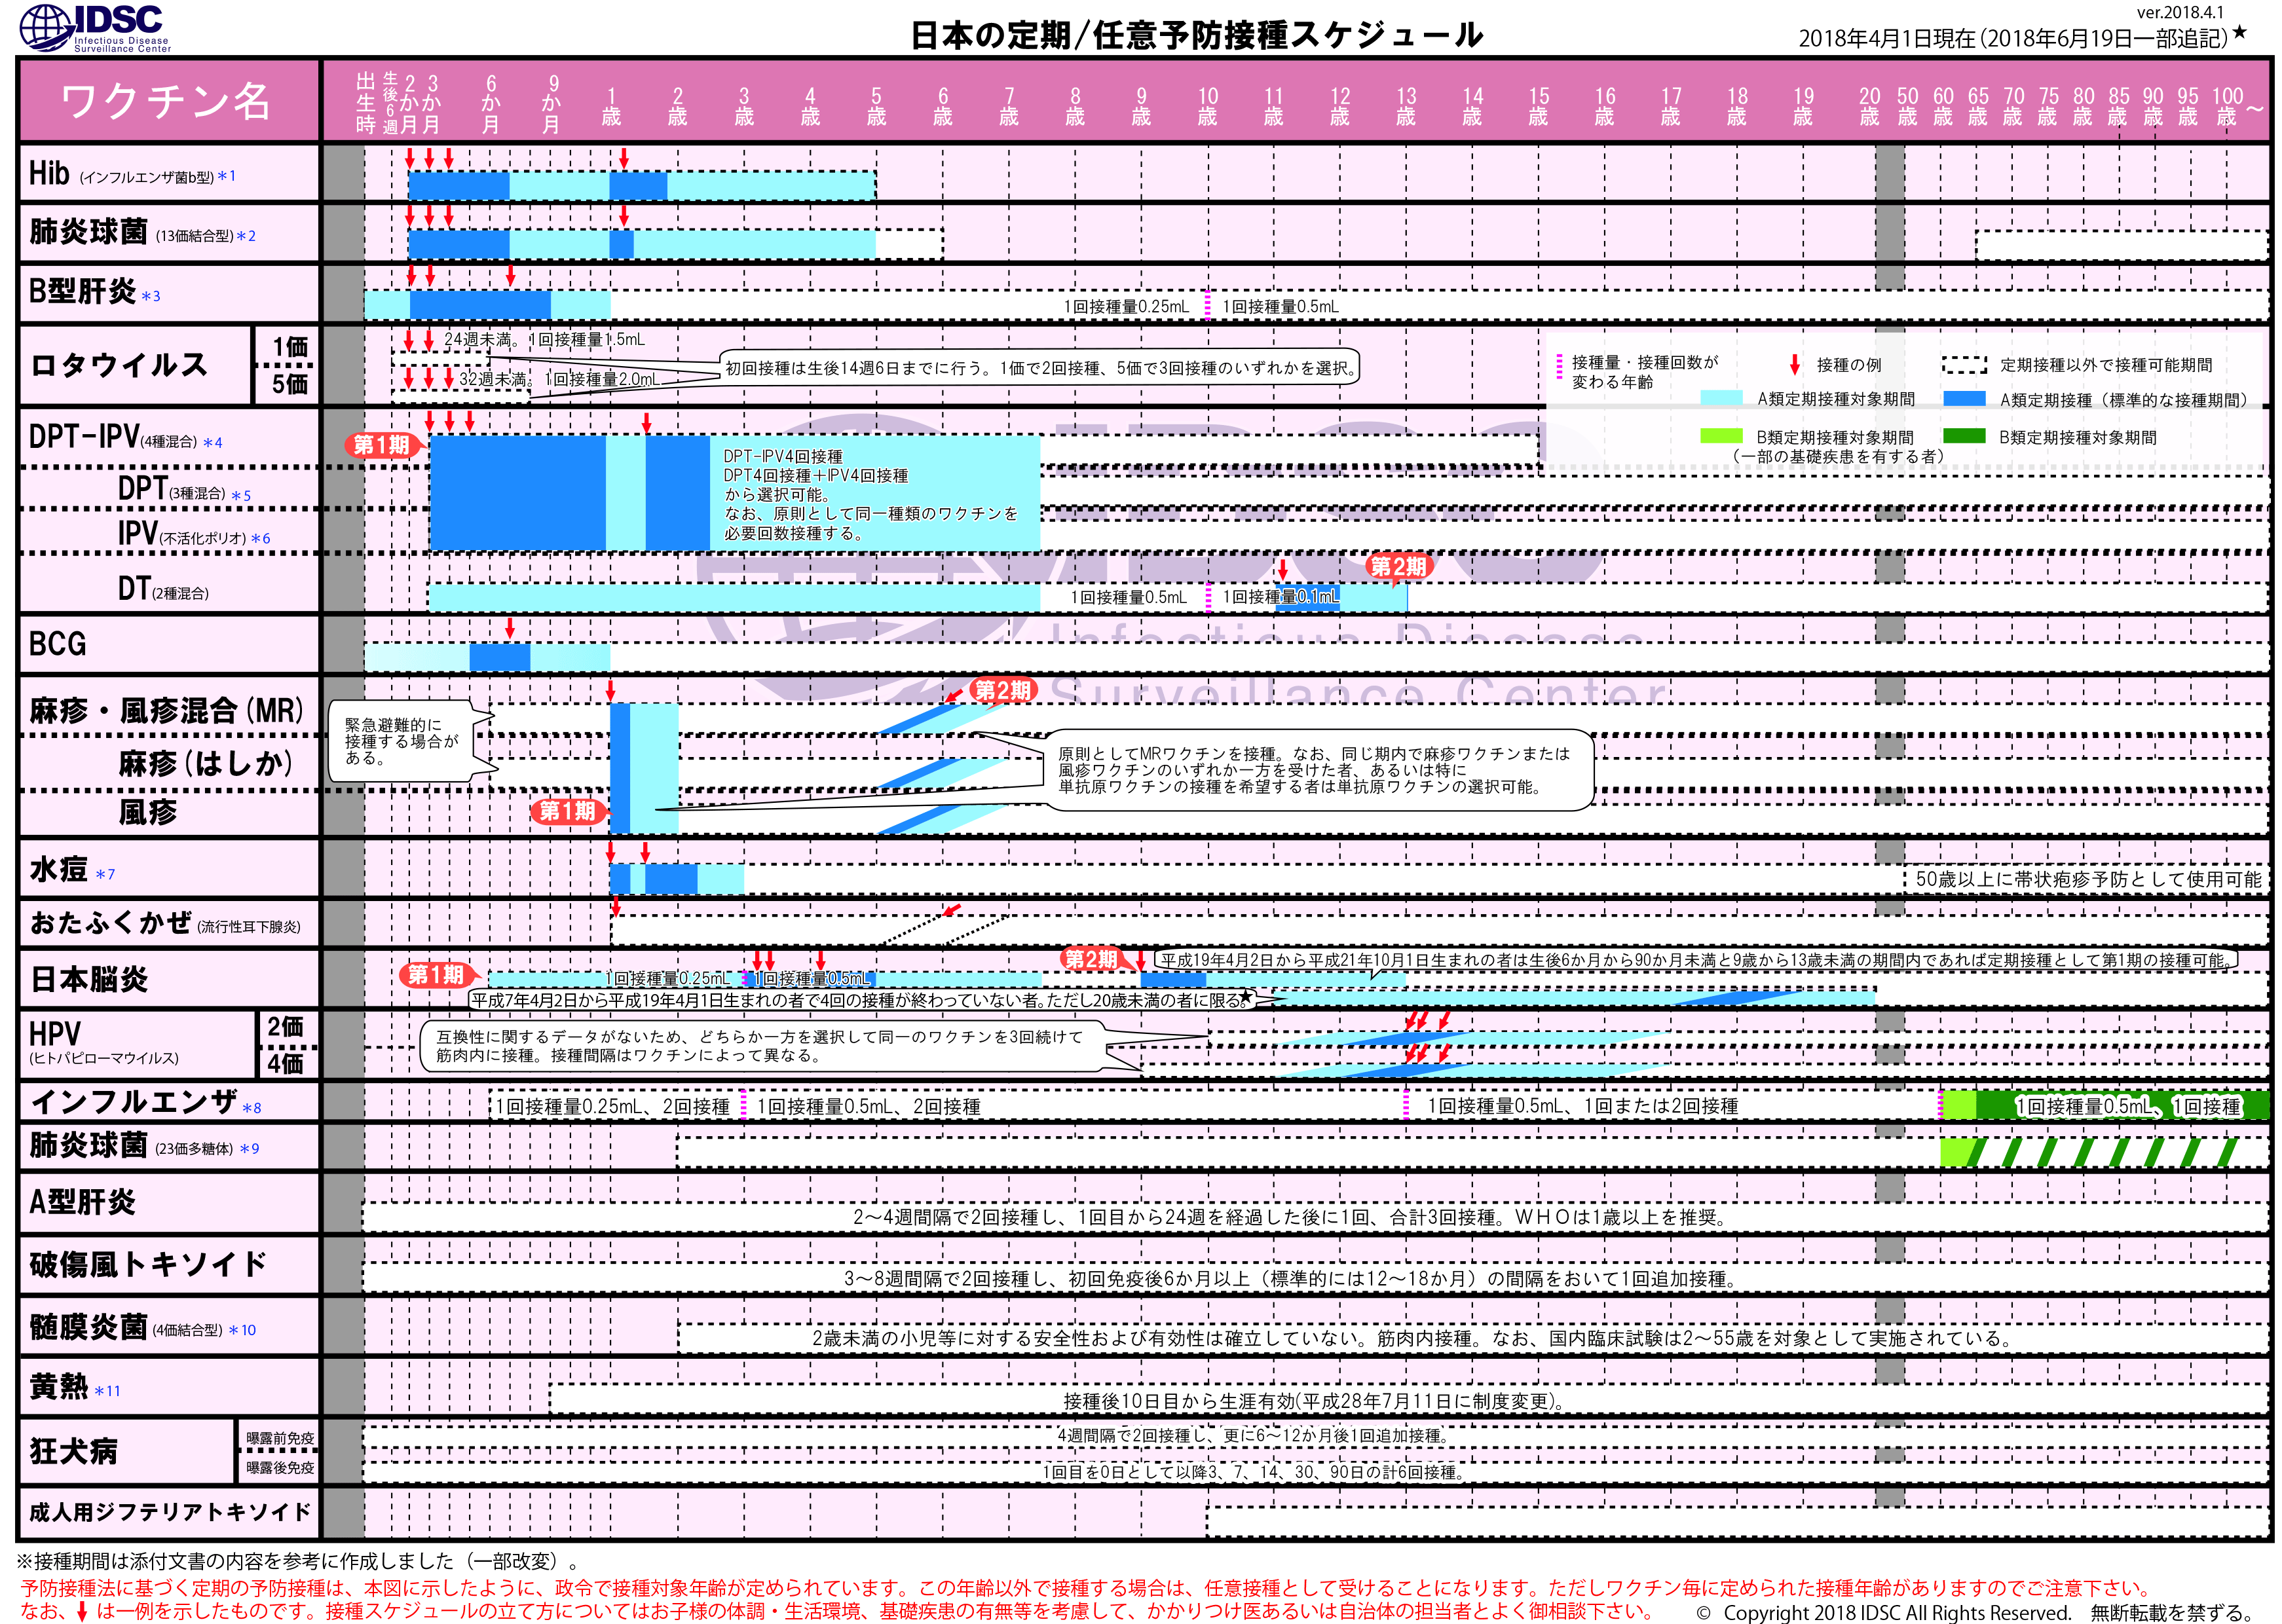 https://www.niid.go.jp/niid/images/vaccine/schedule/2018/JP20180401_02.gif